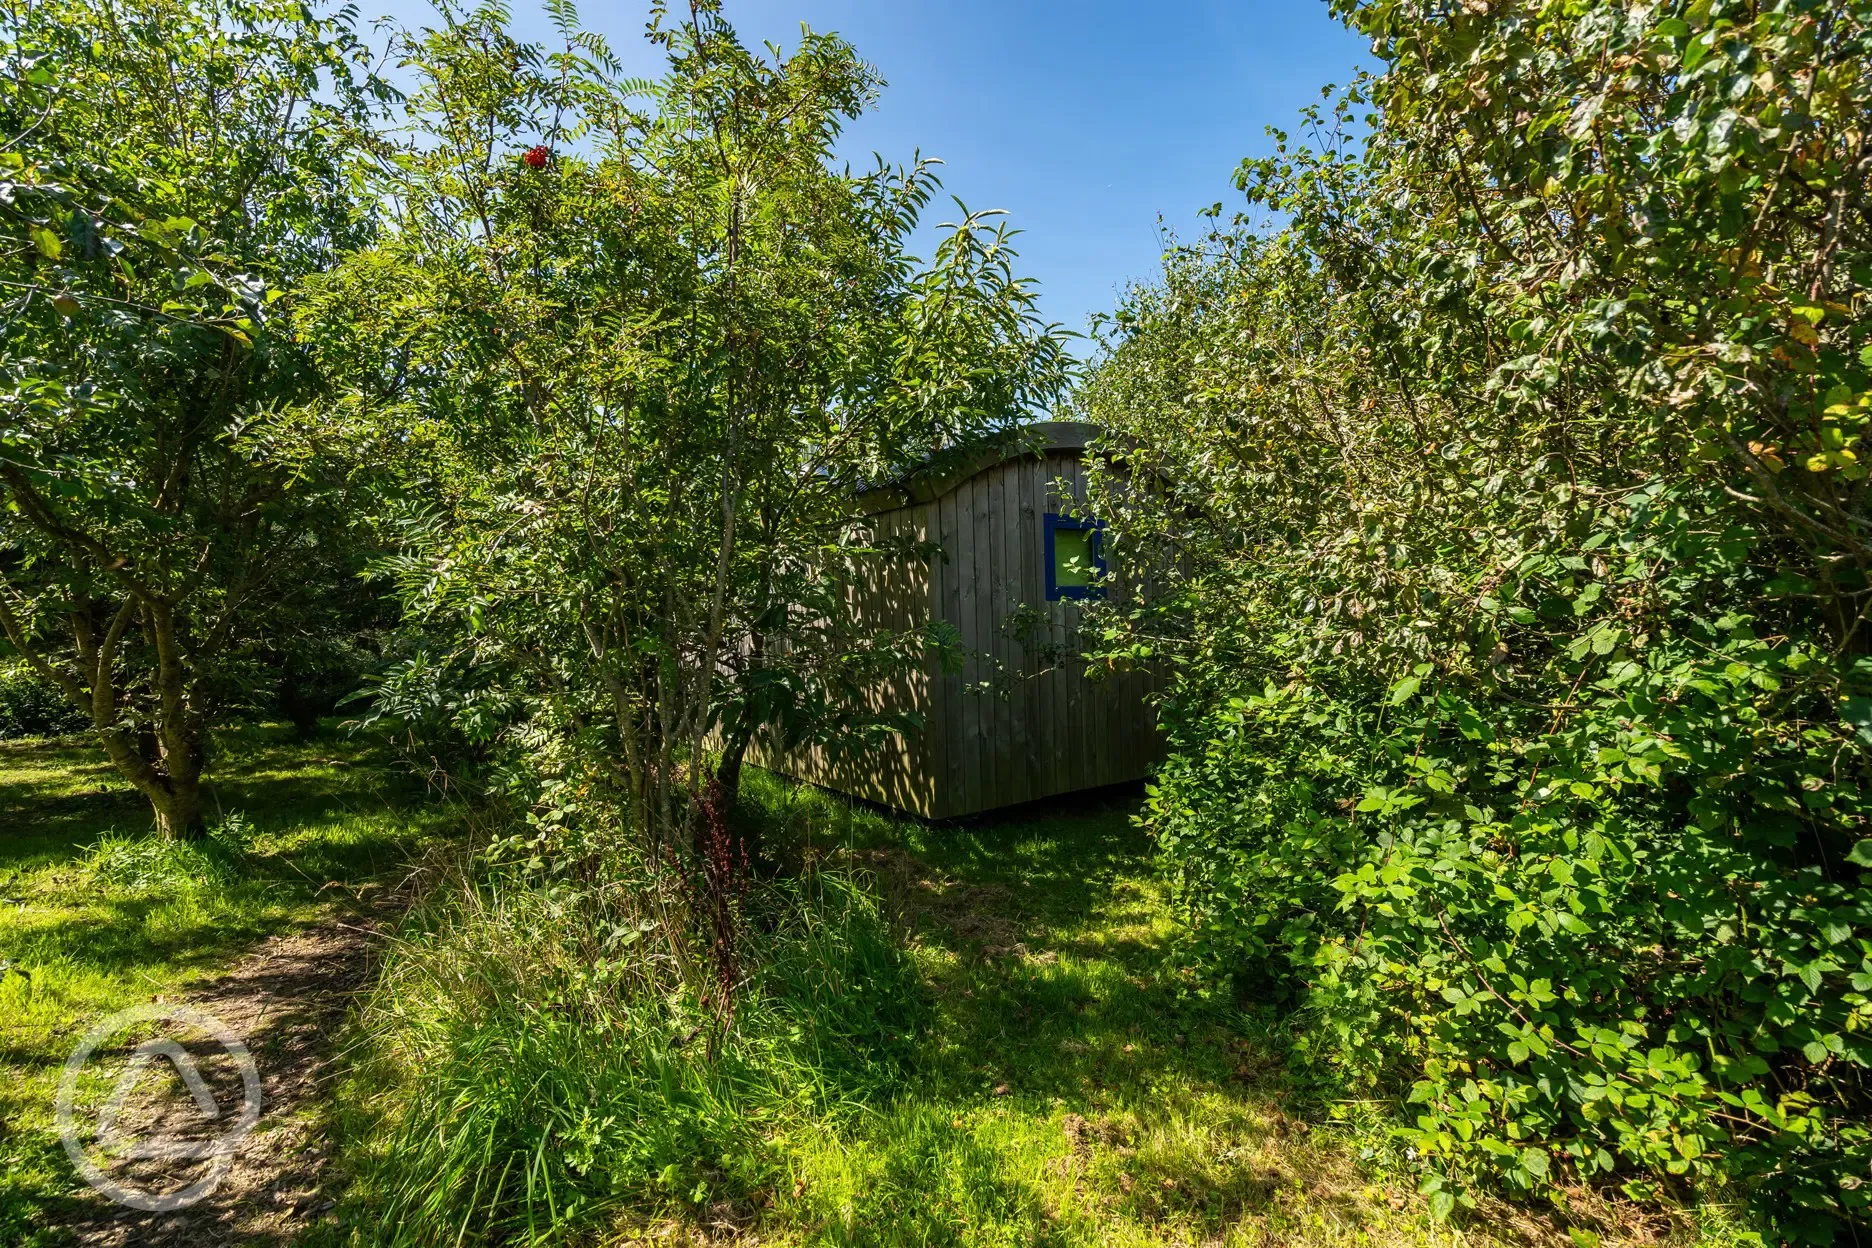 Small woods shepherd's hut